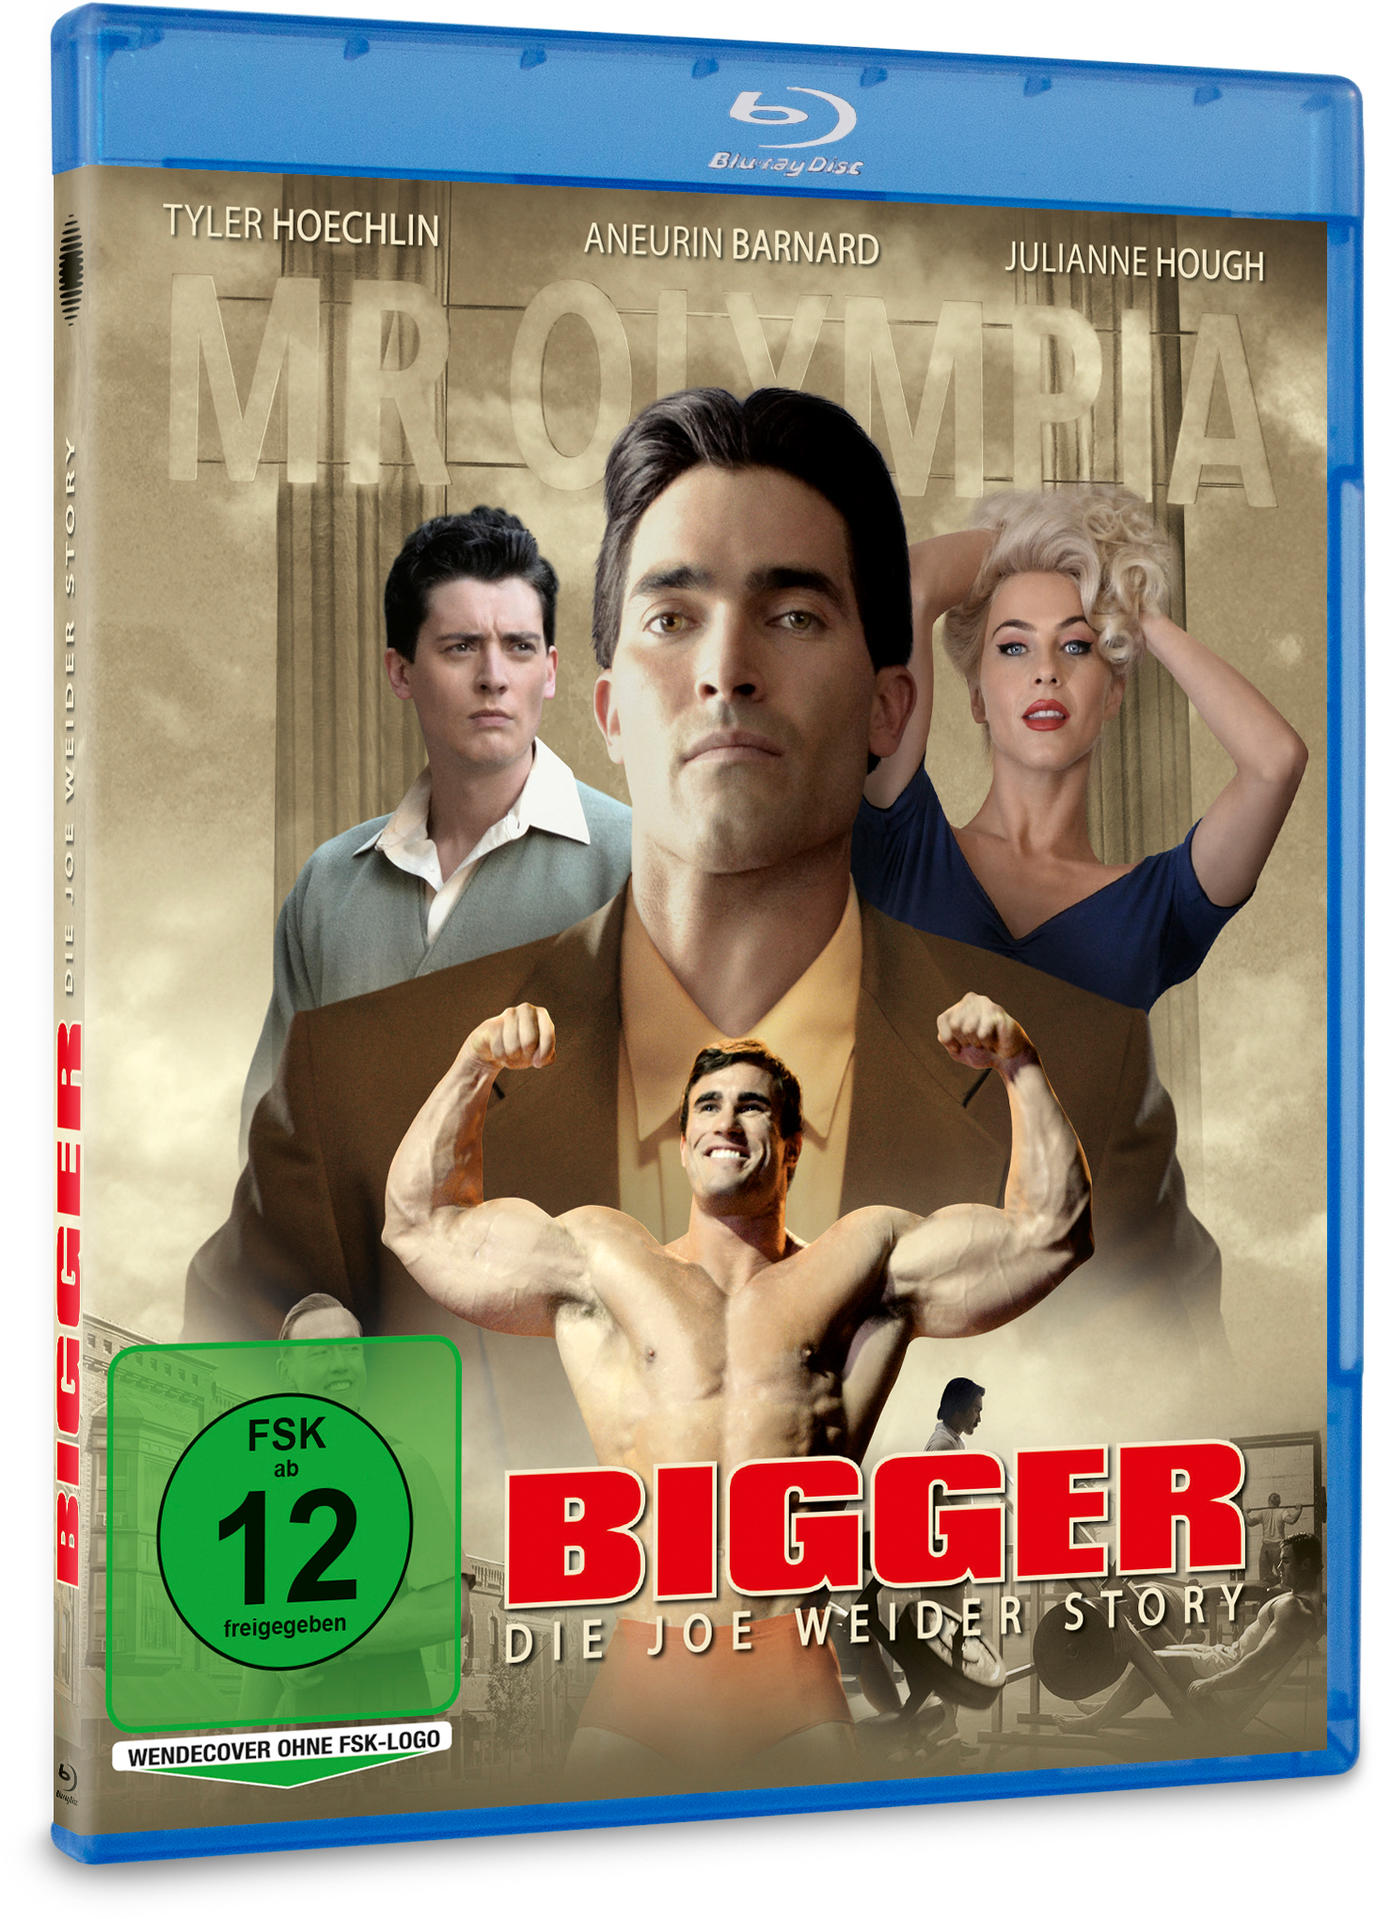 Blu-ray Story Bigger Weider Joe - Die